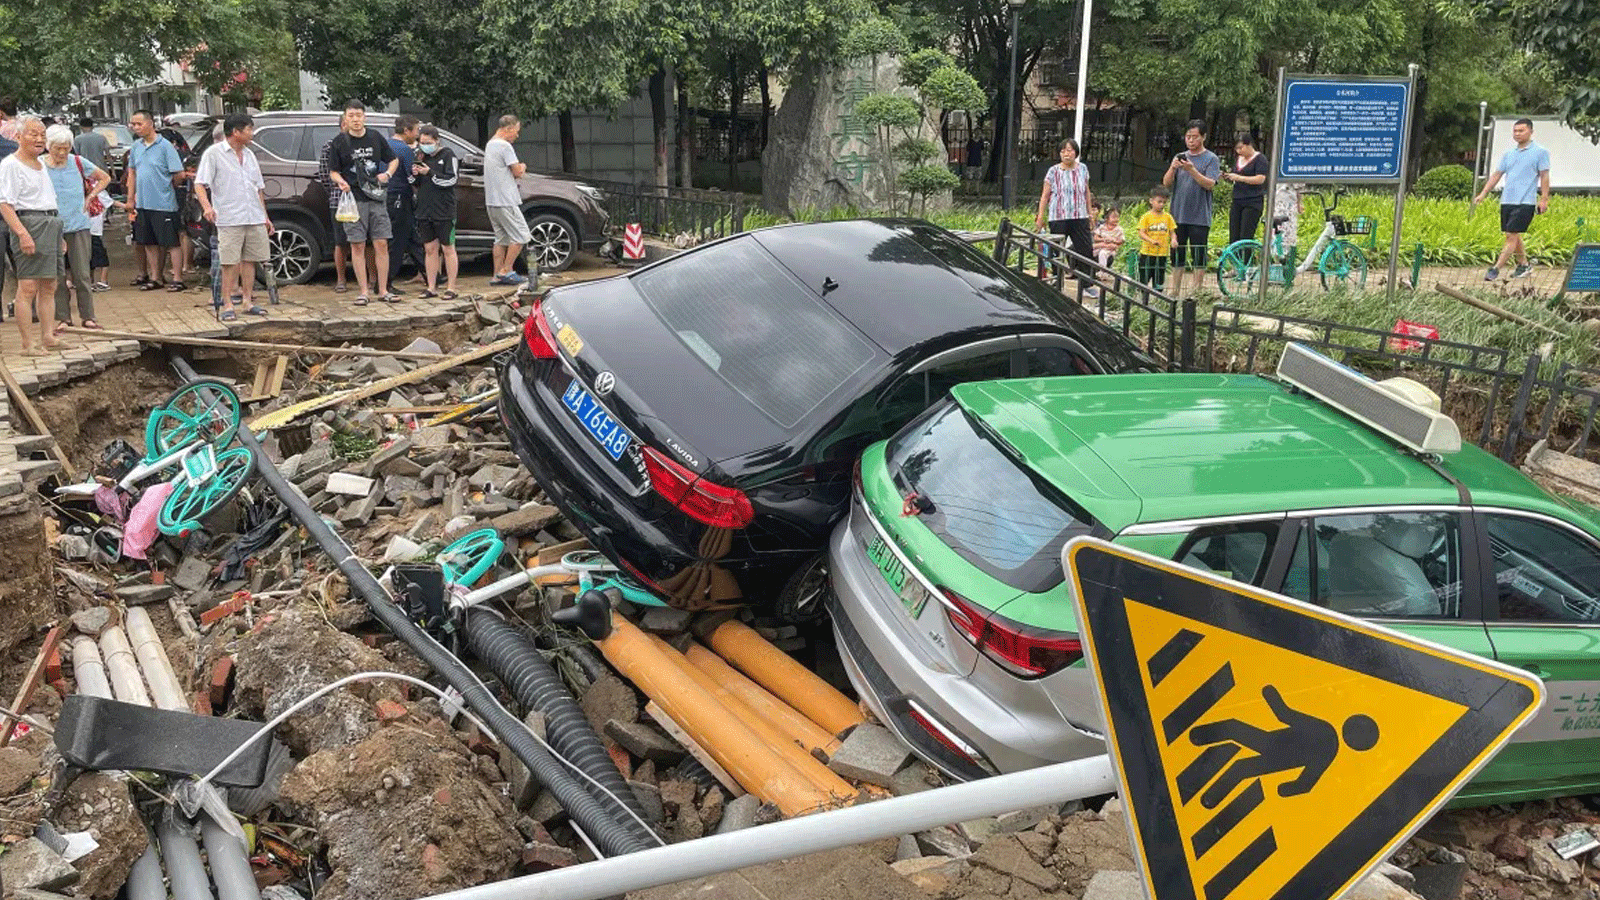 السيارات المتضررة وسط الحطام، جراء هطول أمطار غزيرة على مدينة تشنغتشو تسببت بفيضانات في مقاطعة خنان بوسط الصين